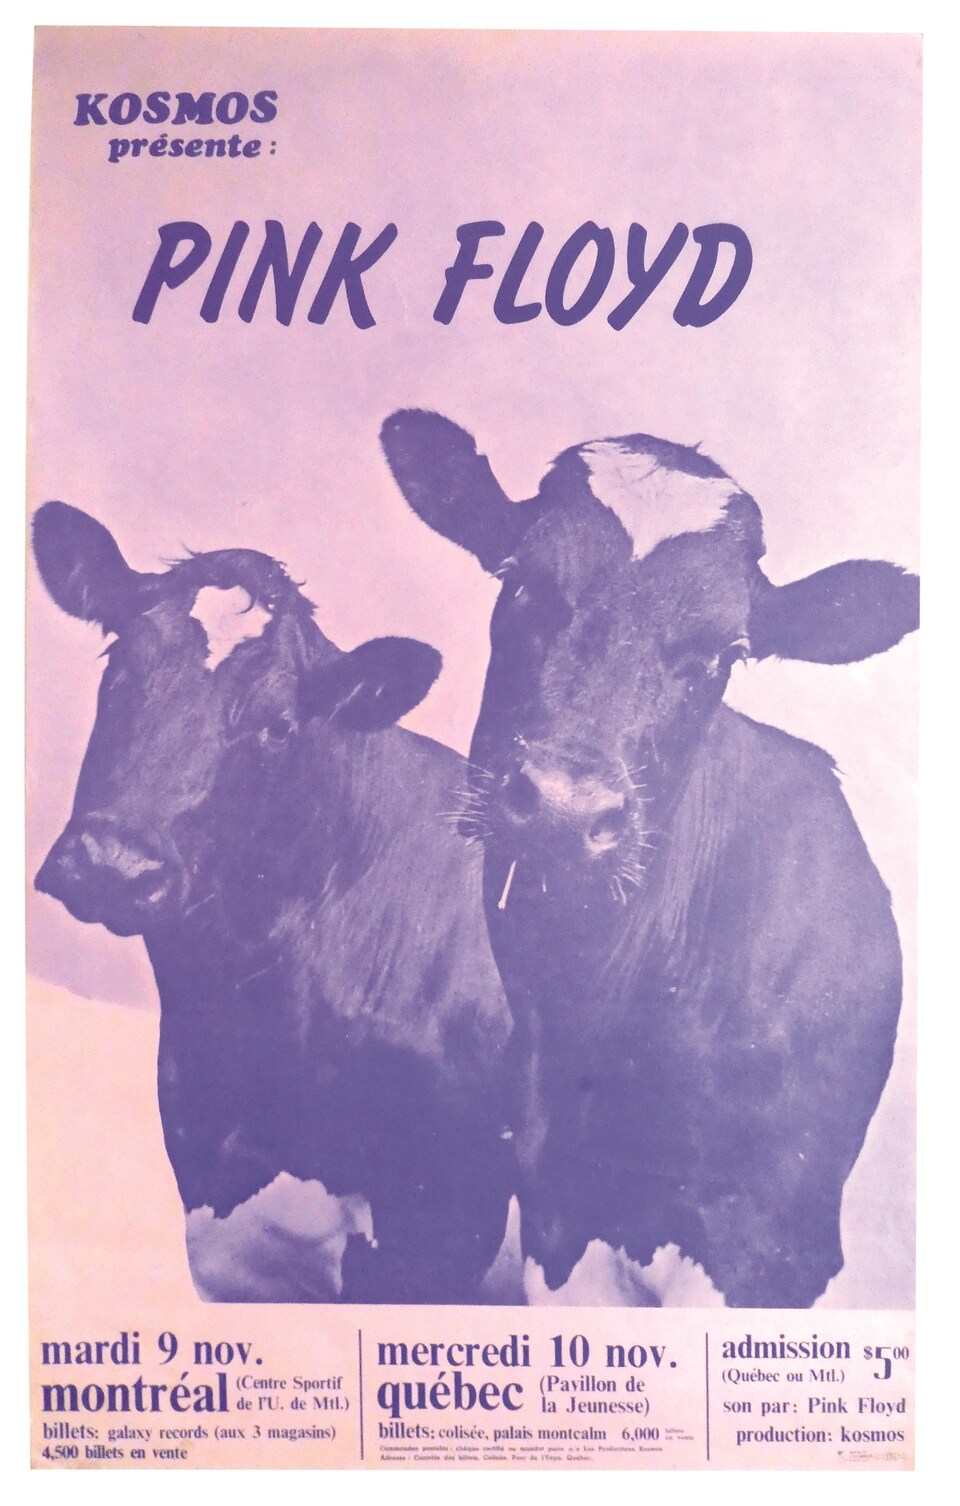 L'affiche du spectacle présente deux vaches et les informations sur les concerts à venir. 